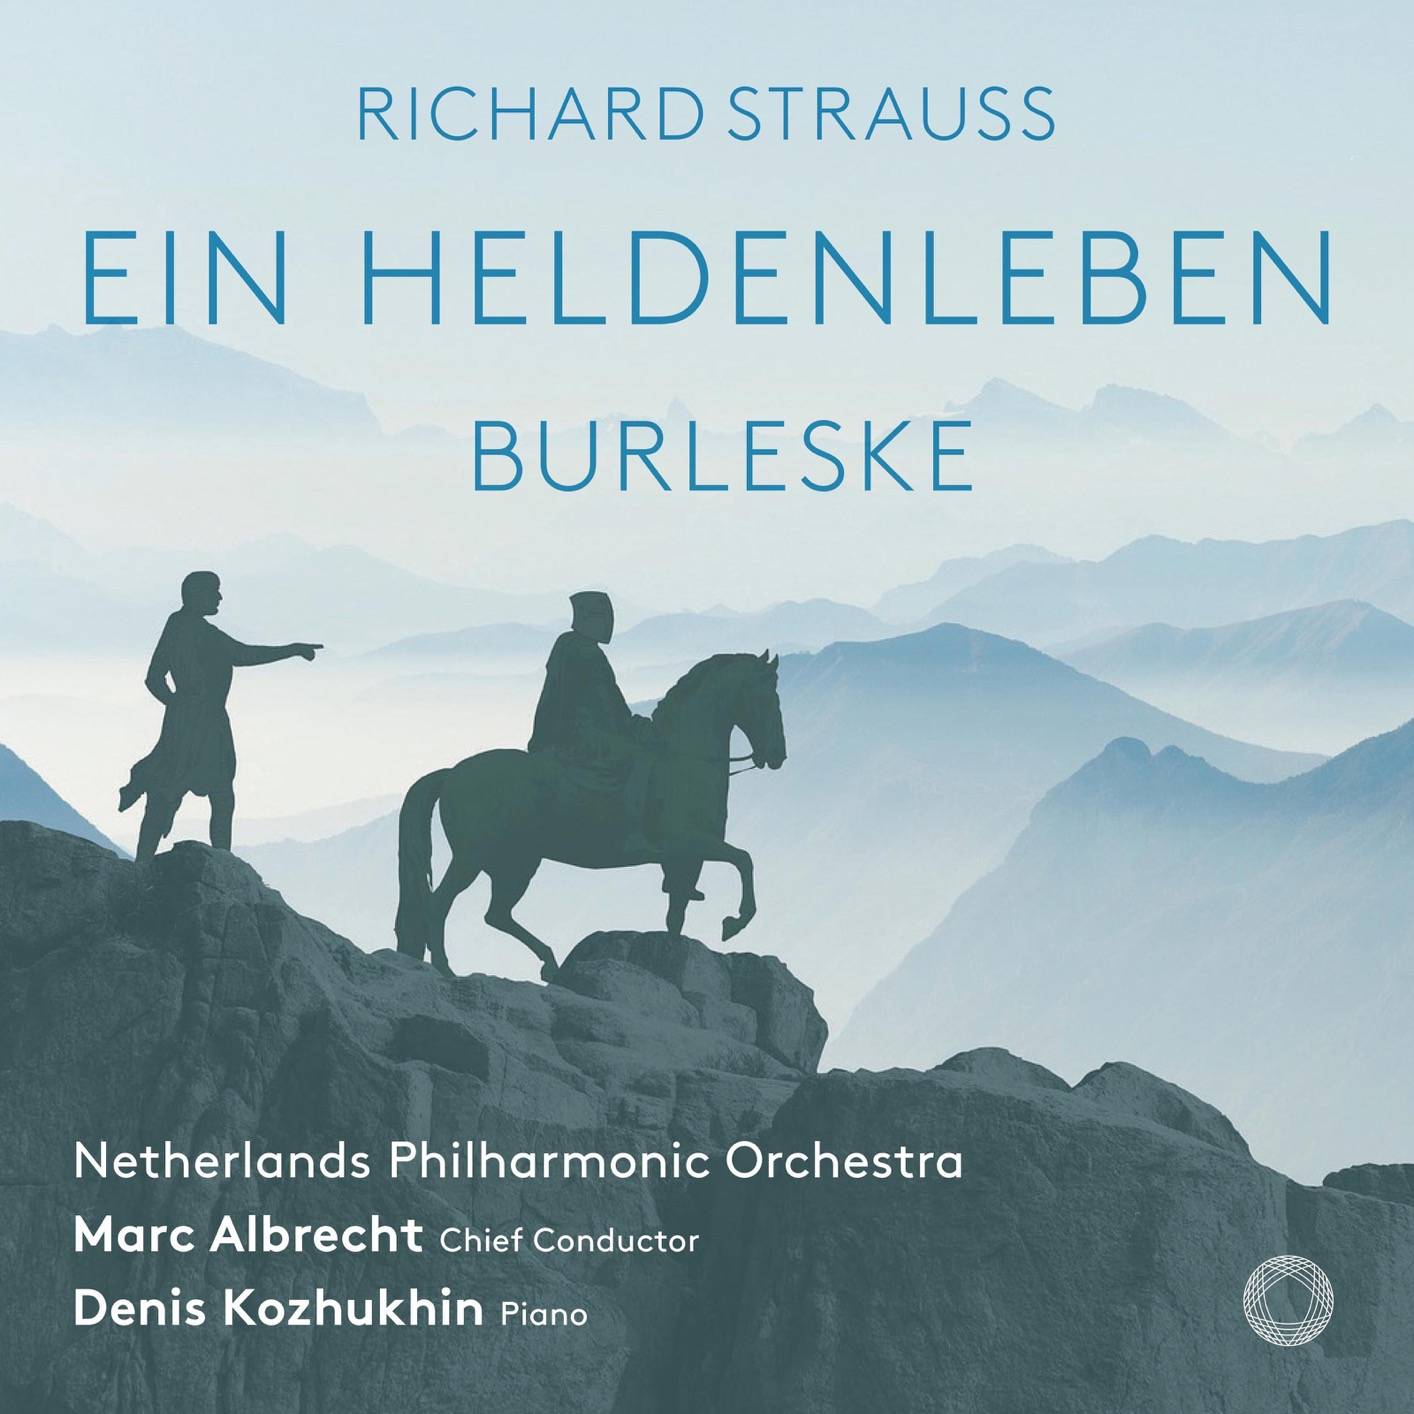 Netherlands Philharmonic Orchestra, Marc Albrecht - R. Strauss: Ein Heldenleben & Burleske (2018) [FLAC 24bit/96kHz]